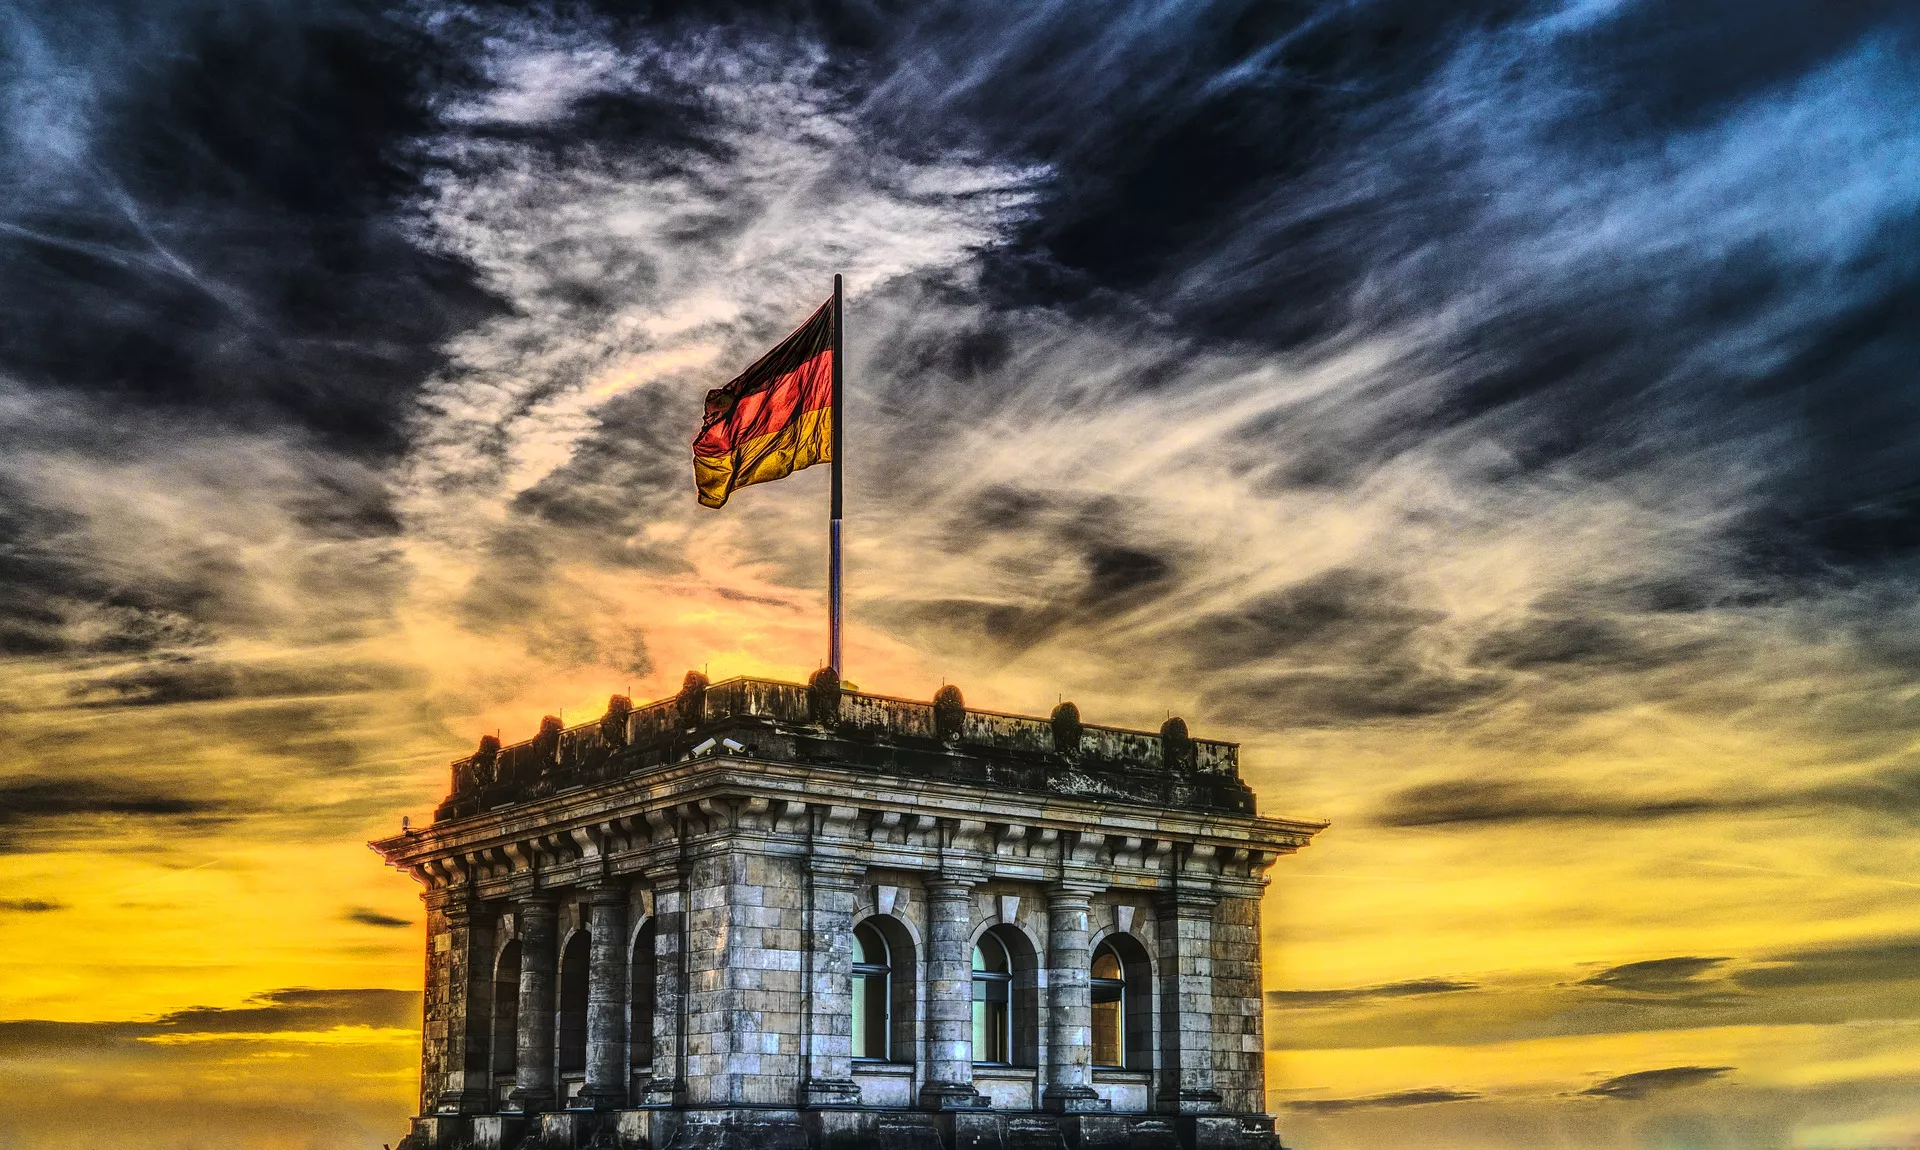 Nieuwe wet in Duitsland stelt banken in staat om Bitcoins op te slaan